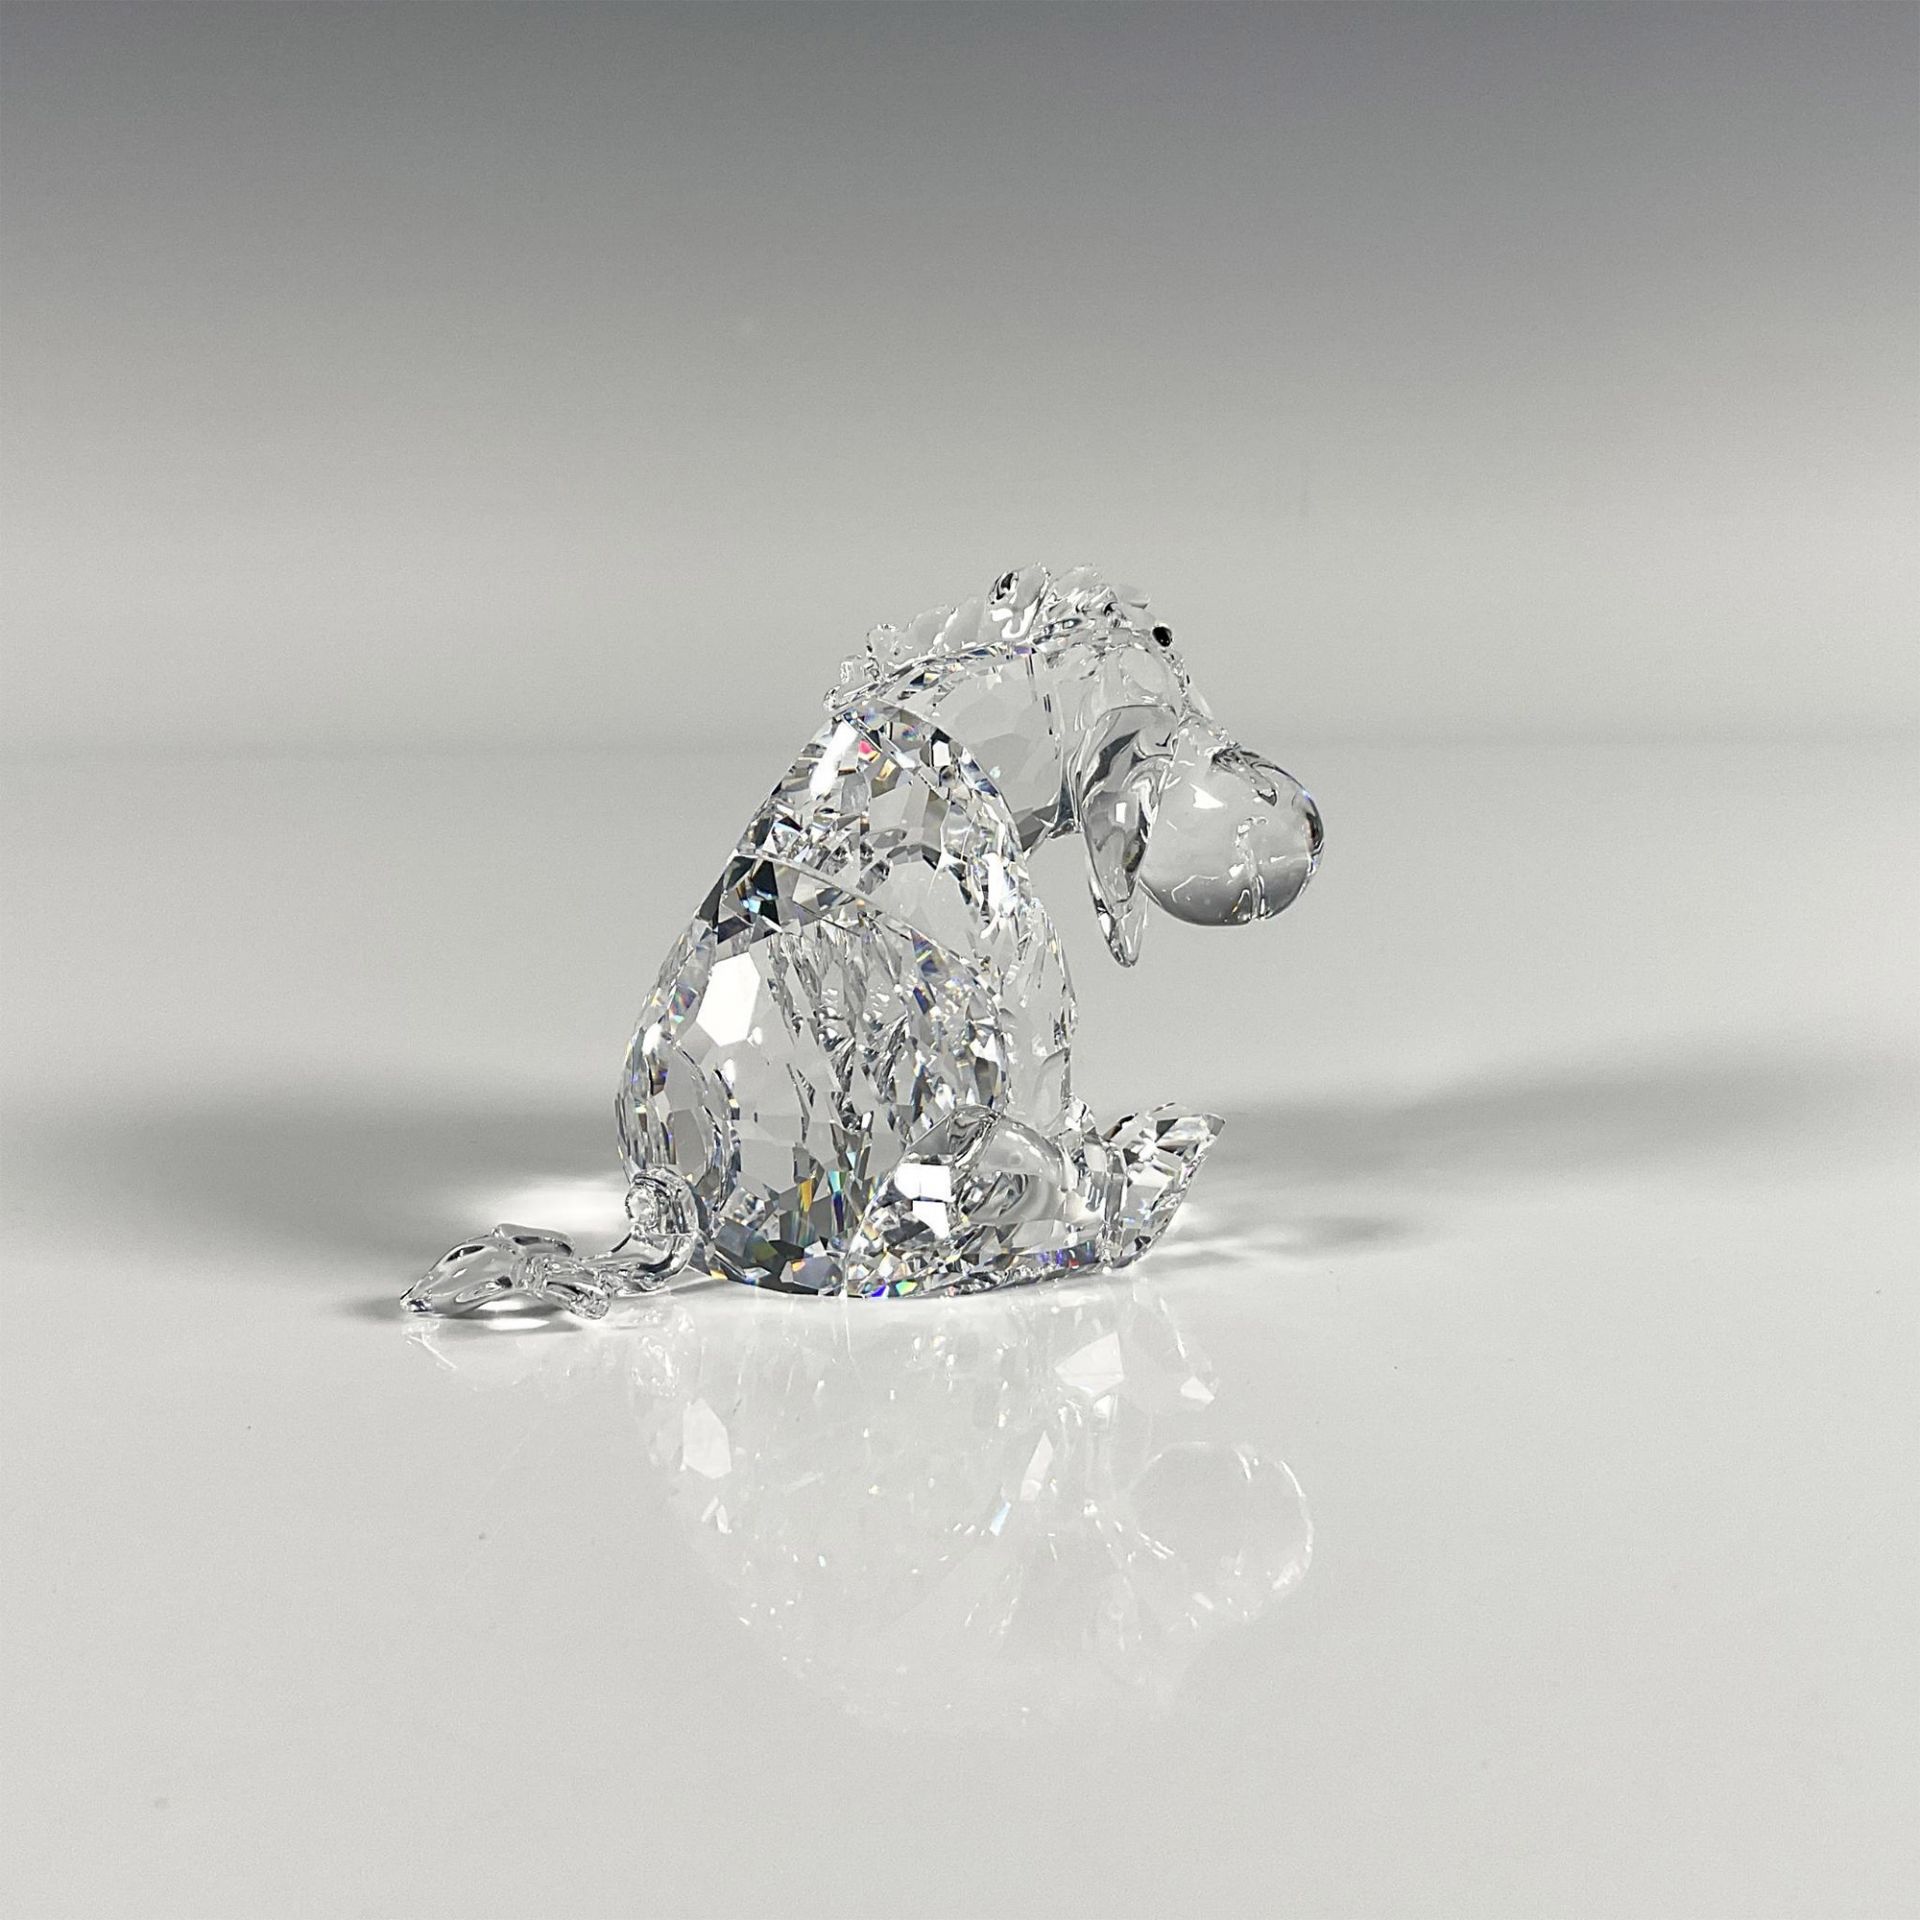 Swarovski Crystal Winnie The Pooh Figurine, Eeyore - Image 3 of 4